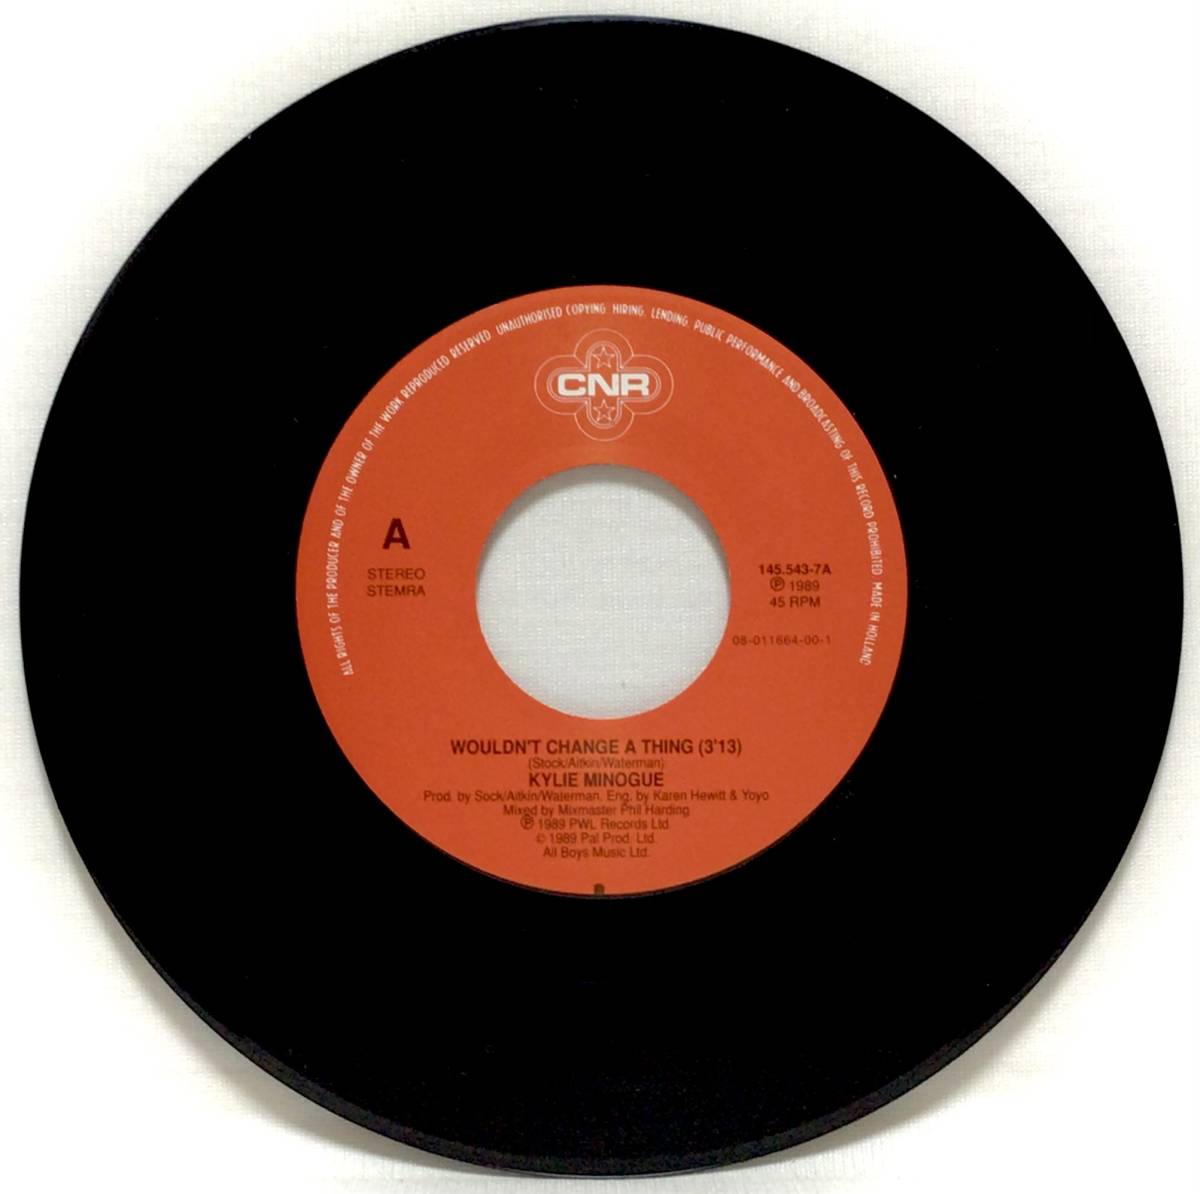 【蘭7】 KYLIE MINOGUE / WOULDN'T CHANGE A THING / IT'S NO SECRET / 1989 オランダ盤 7インチシングルレコード EP 45 EUROBEAT_画像3